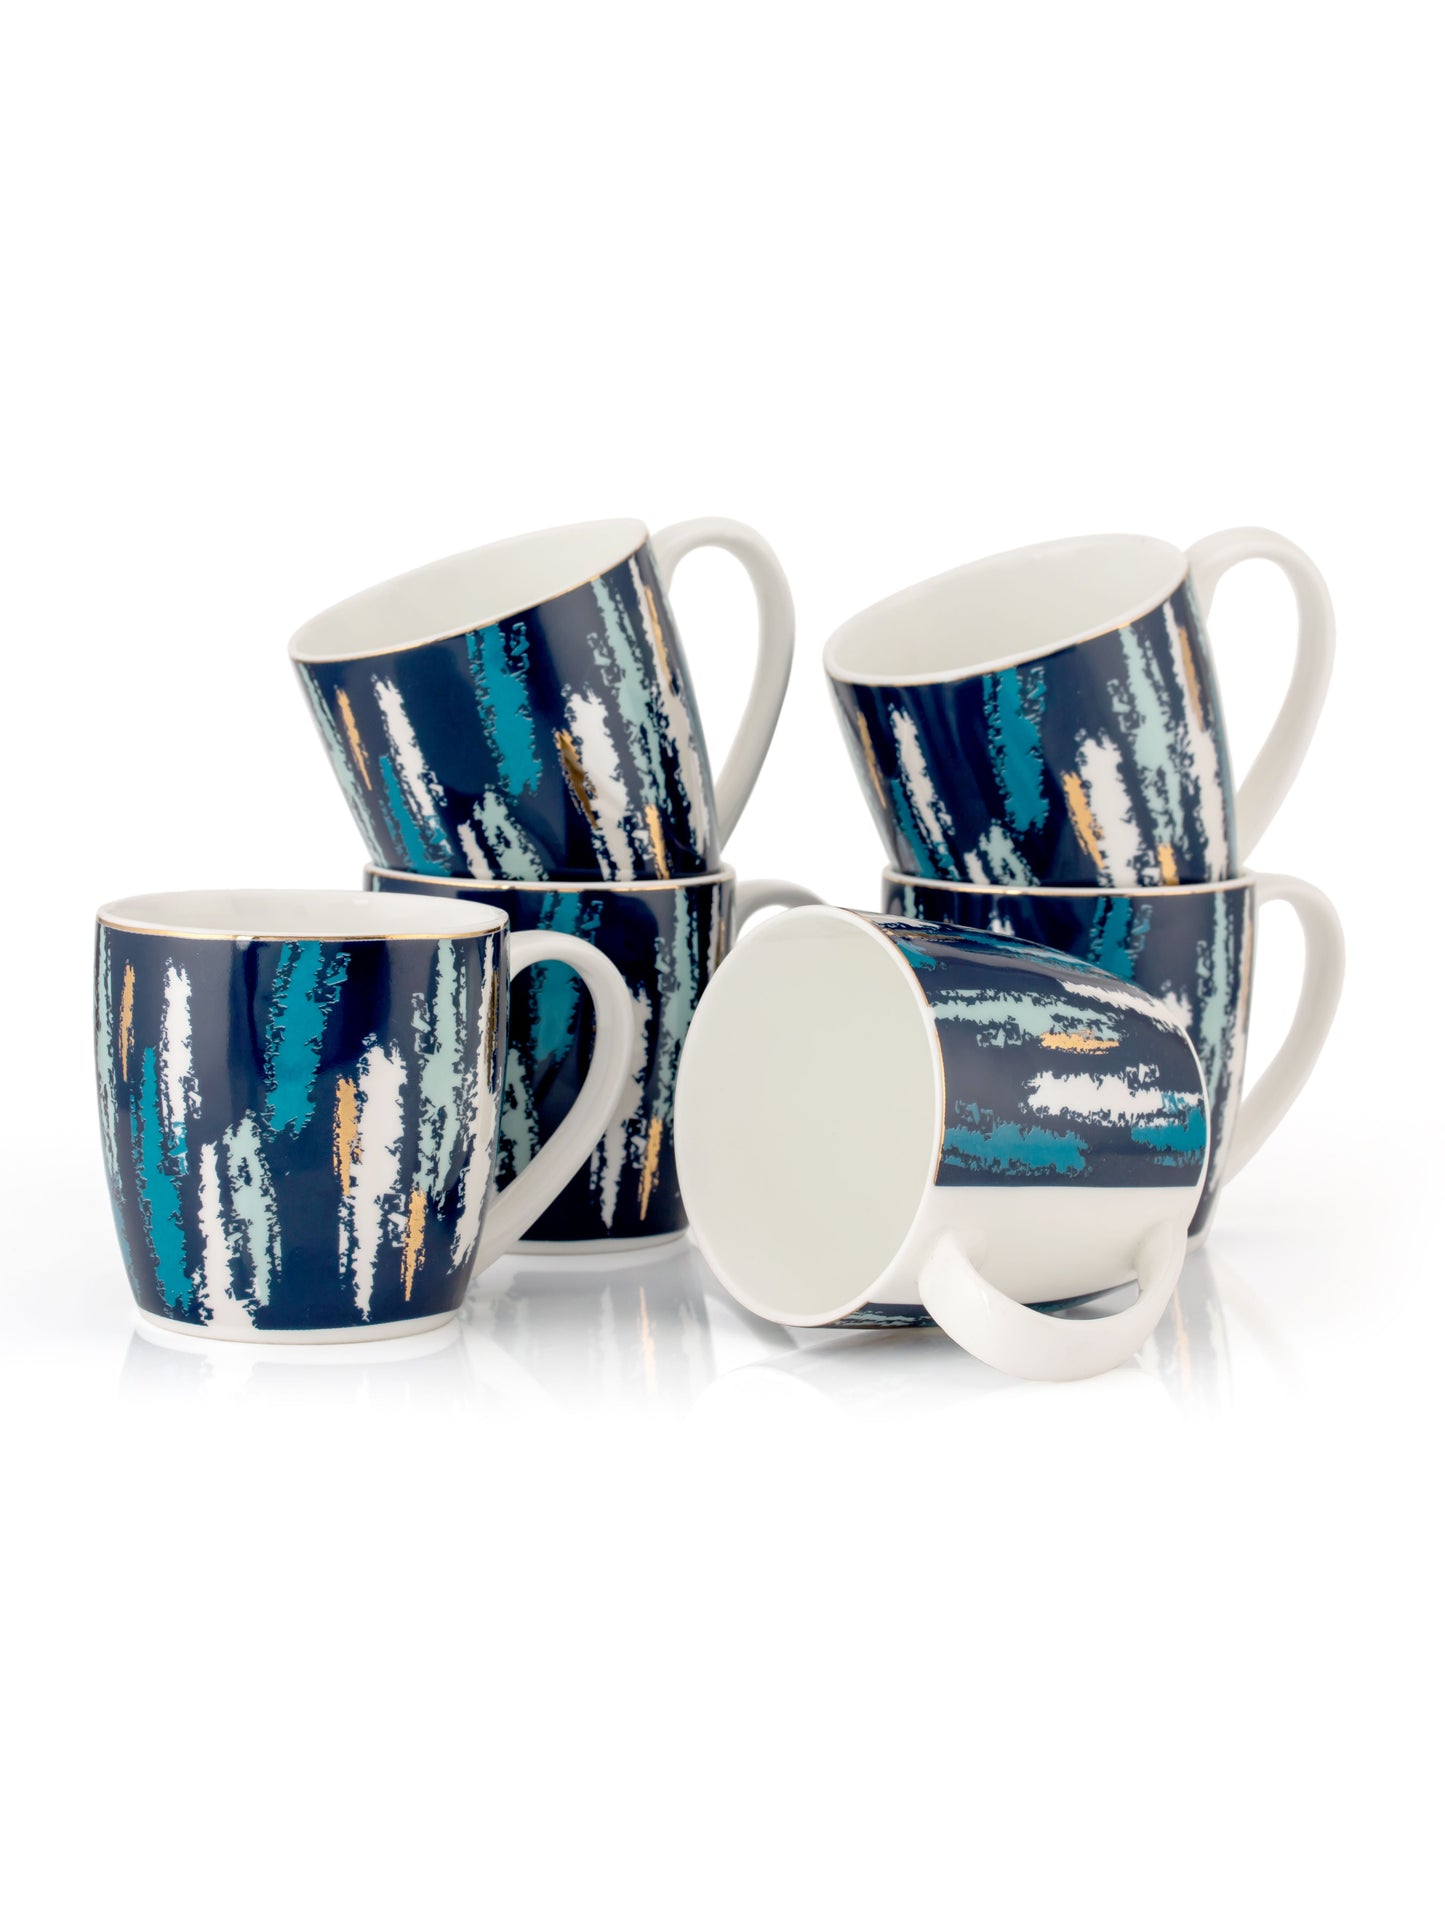 JCPL Alton Posh Coffee & Tea Mug Set of 6 (D406)